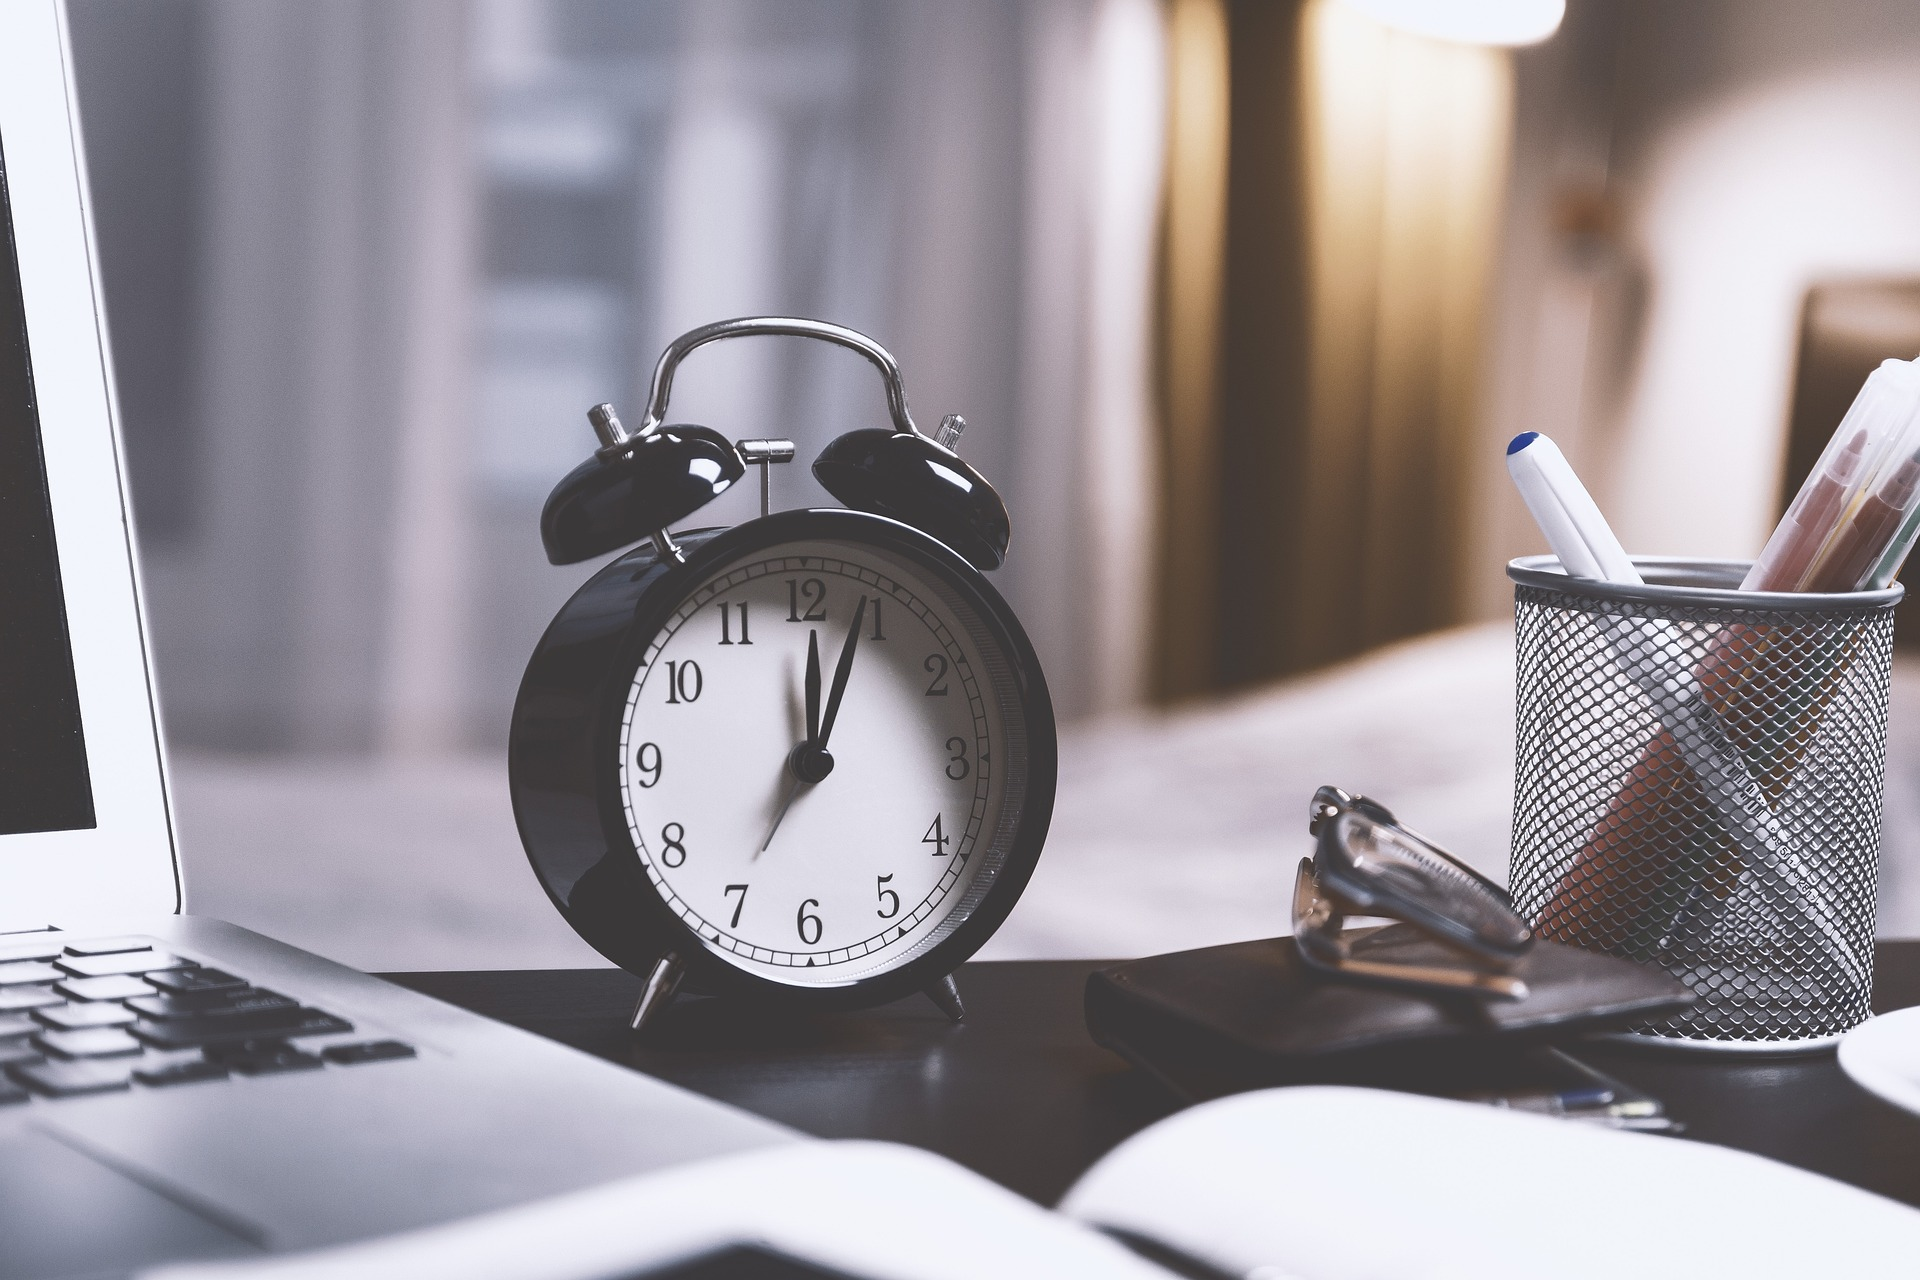 Alarm Clock to start habit stacking